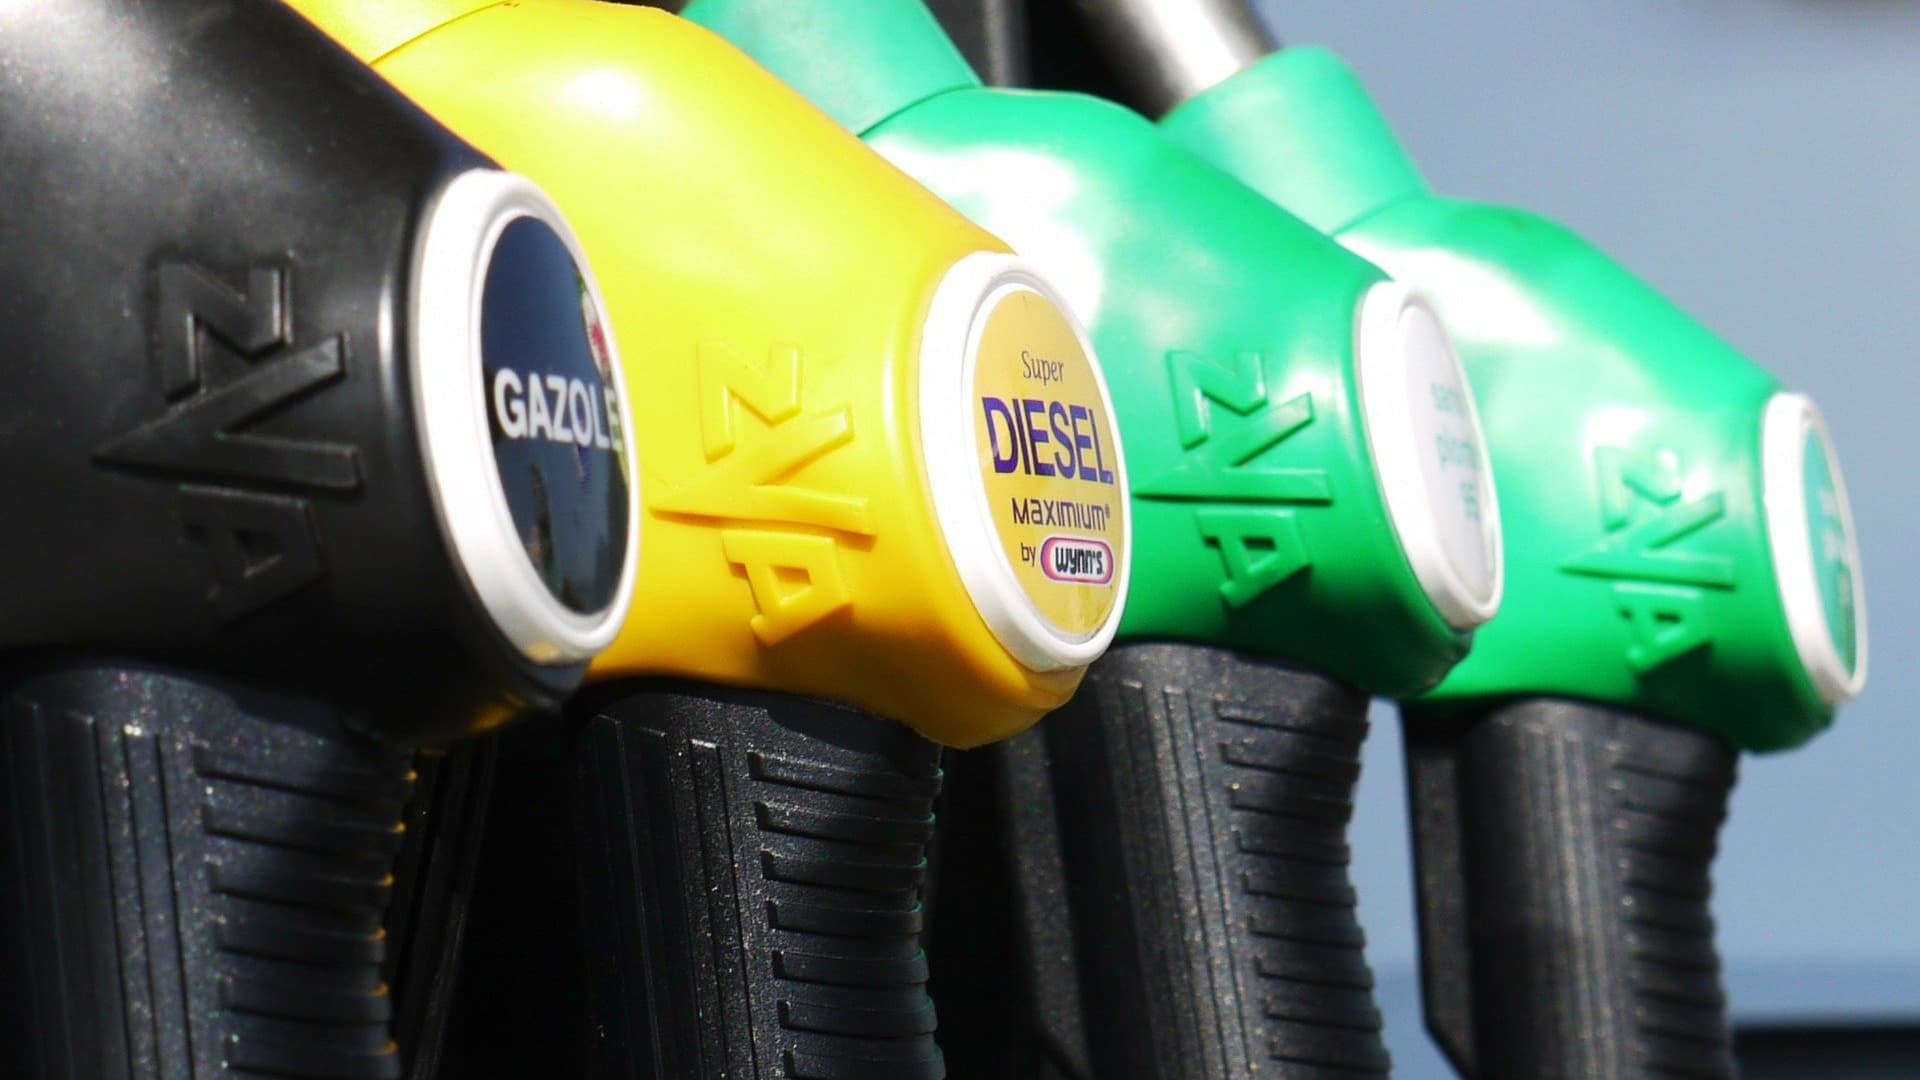 Pénurie mondiale de diesel : pourquoi cela survient et quel impact  aura-t-elle sur votre porte-monnaie ? - BBC News Afrique